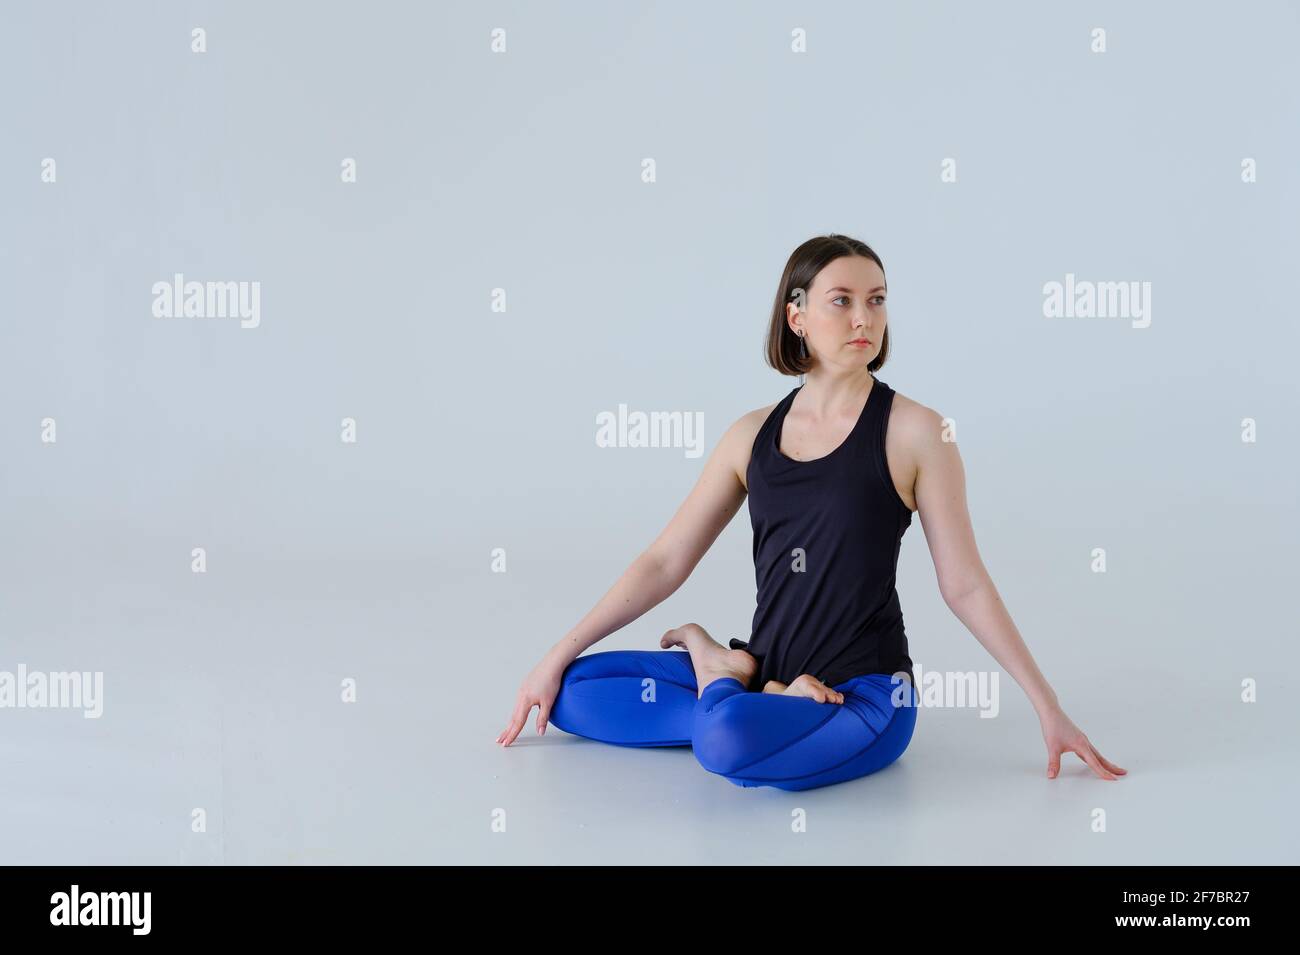 Jeune femme en sport pratiquant le yoga. Banque D'Images